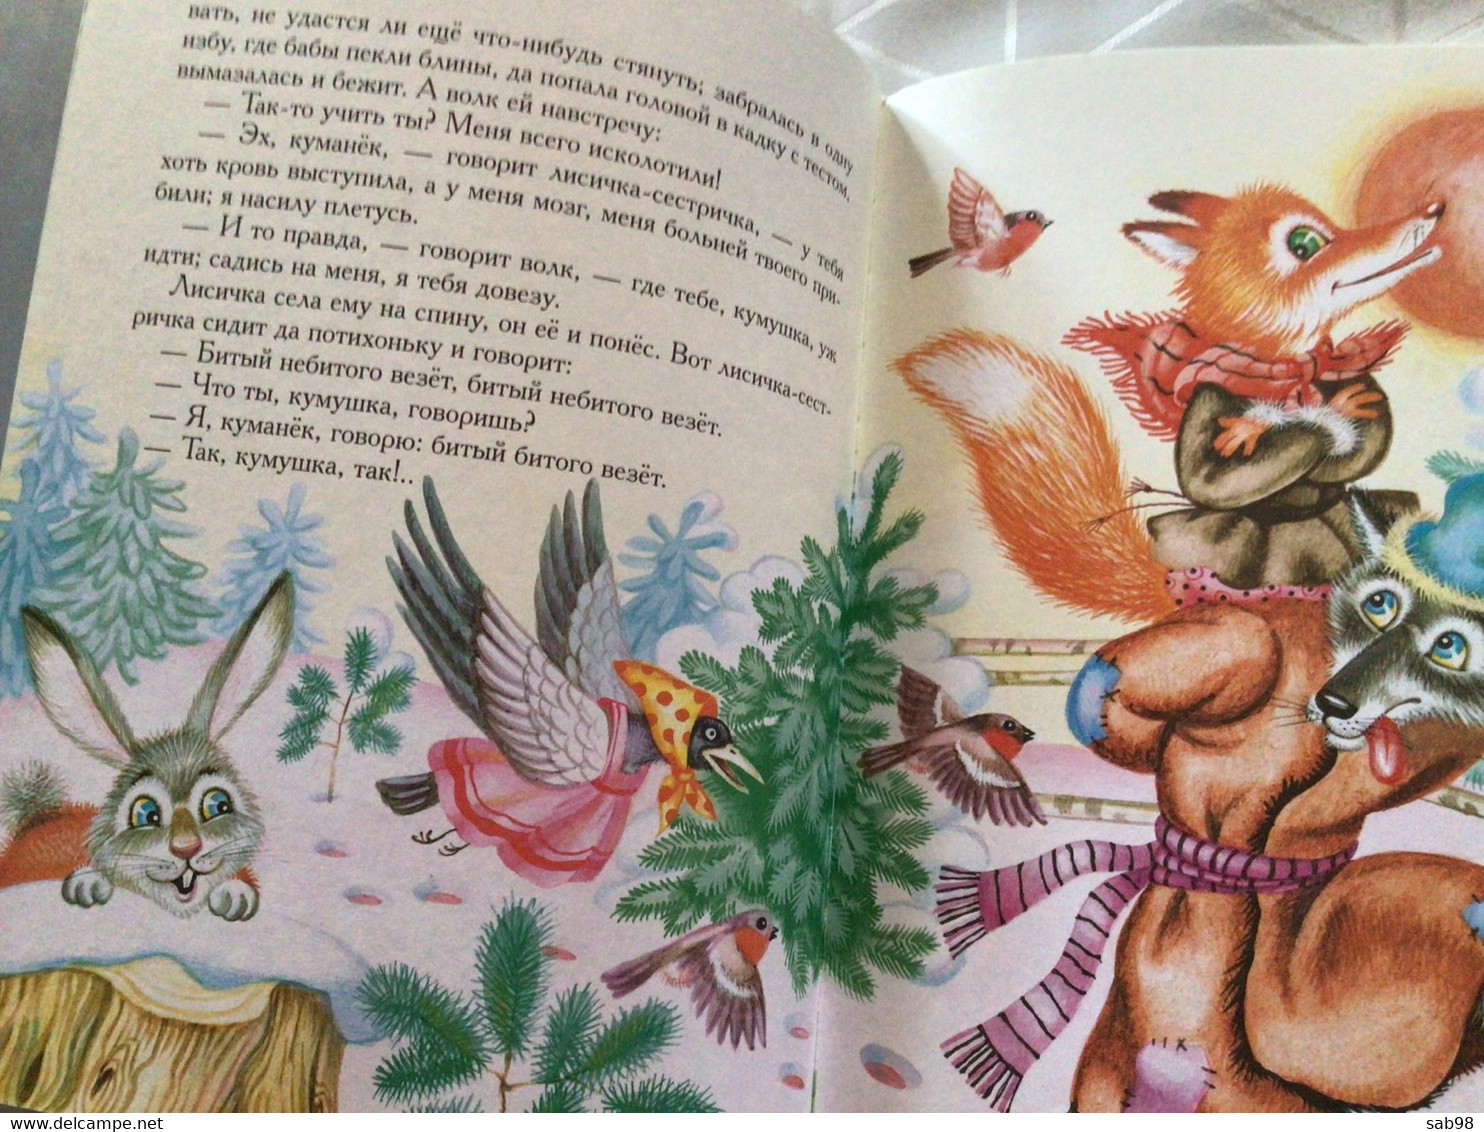 Livre Pour Enfant Russe Telemanns - Tepemok PeNKa - Giovani